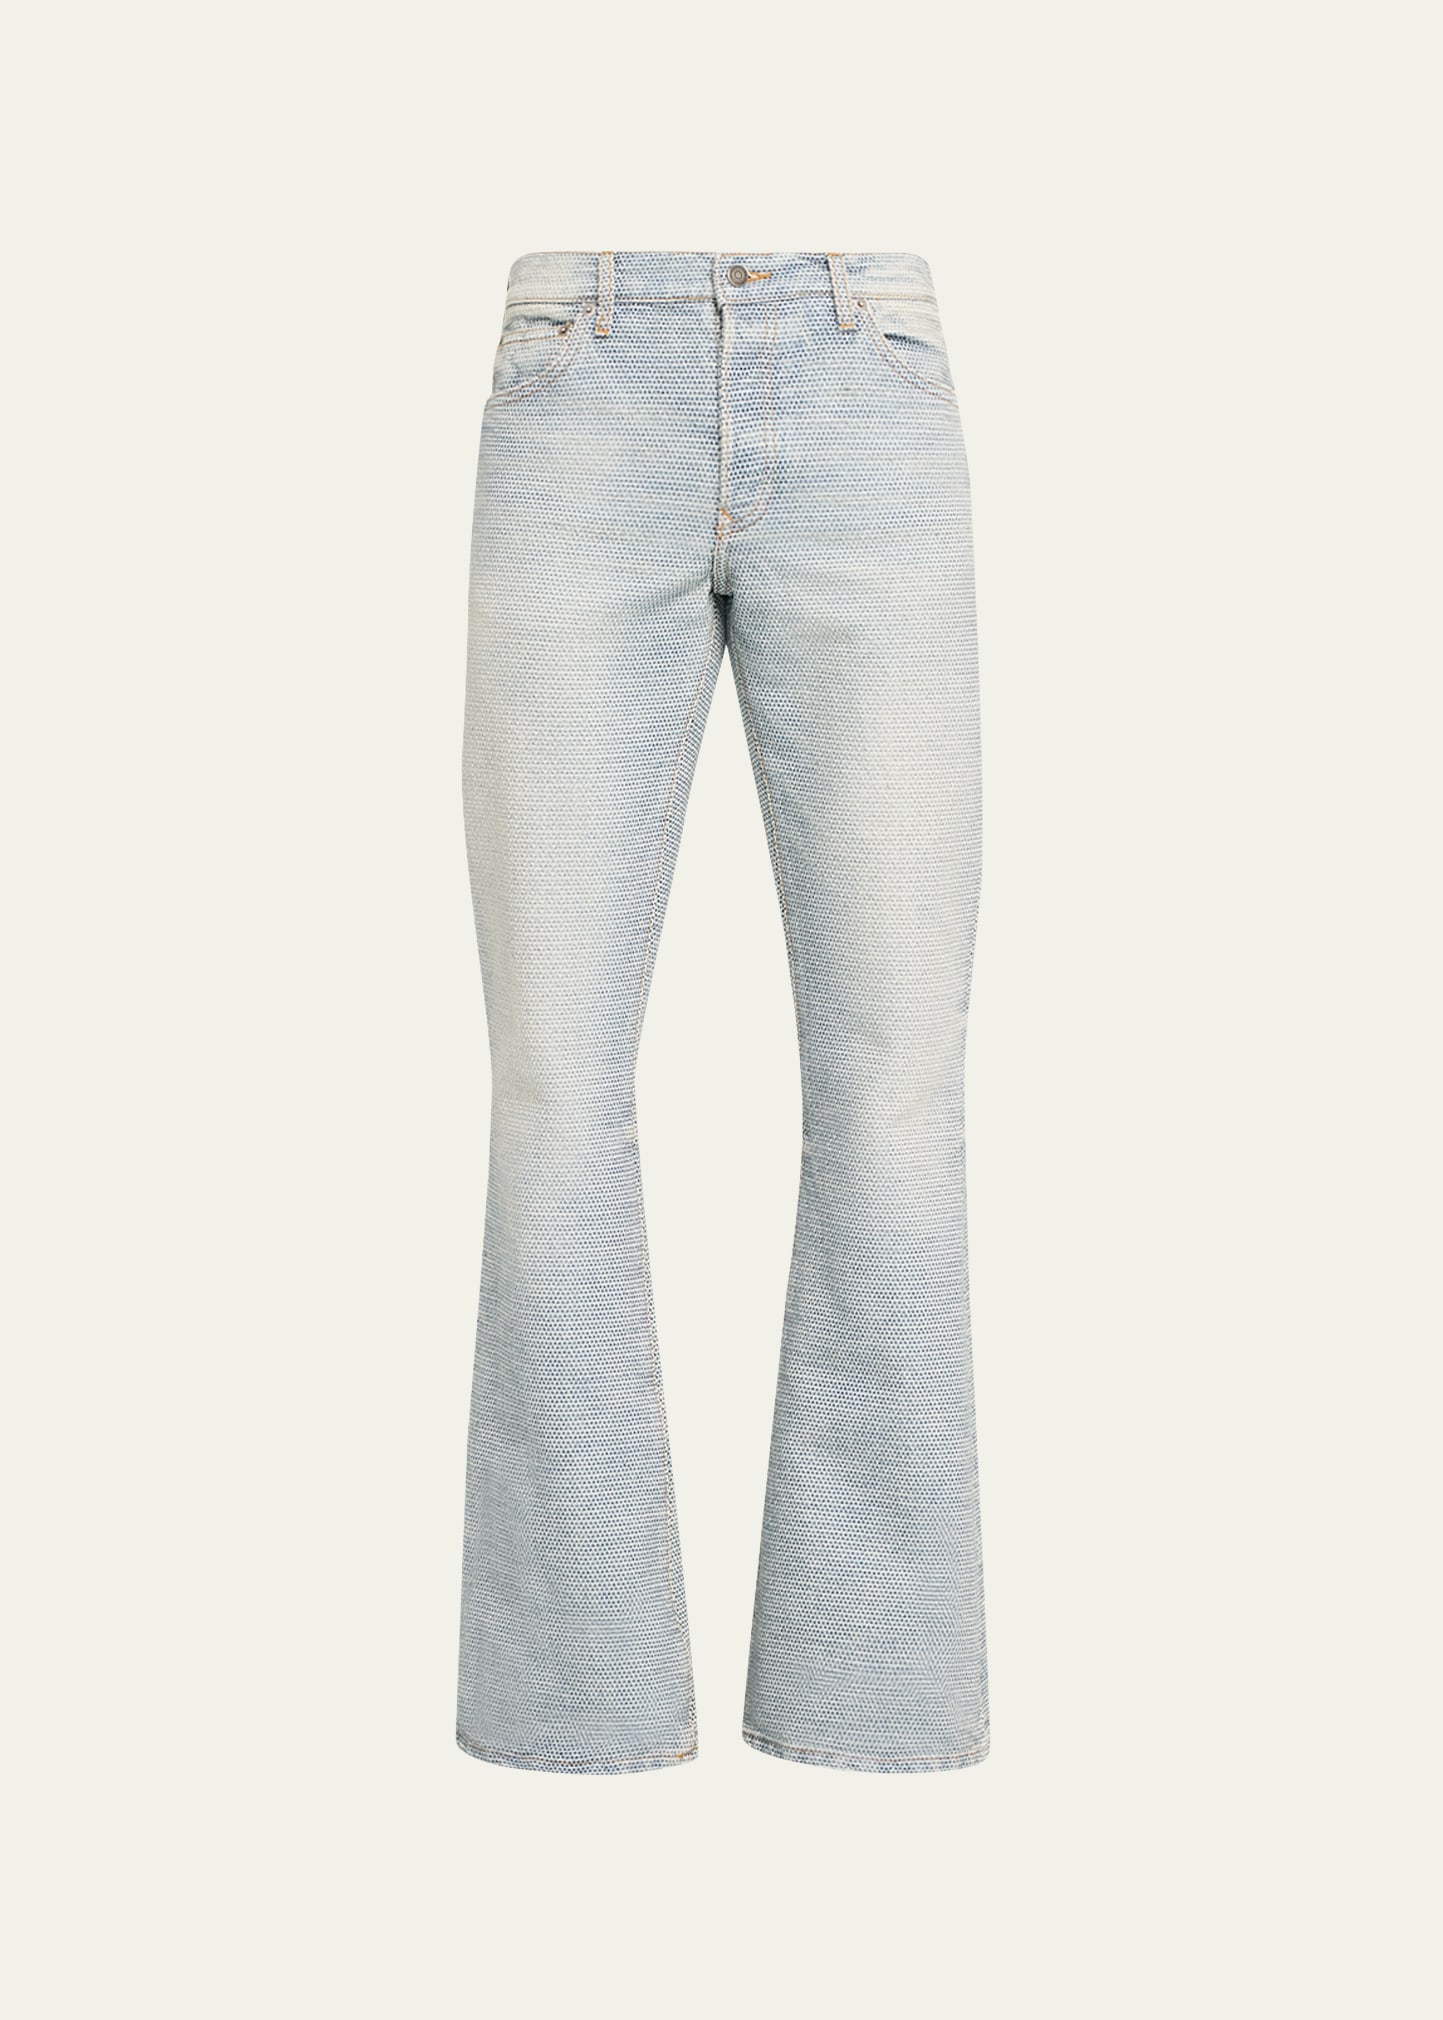 Cout De La Liberte Men's Jimmy Patterned Flare Jeans